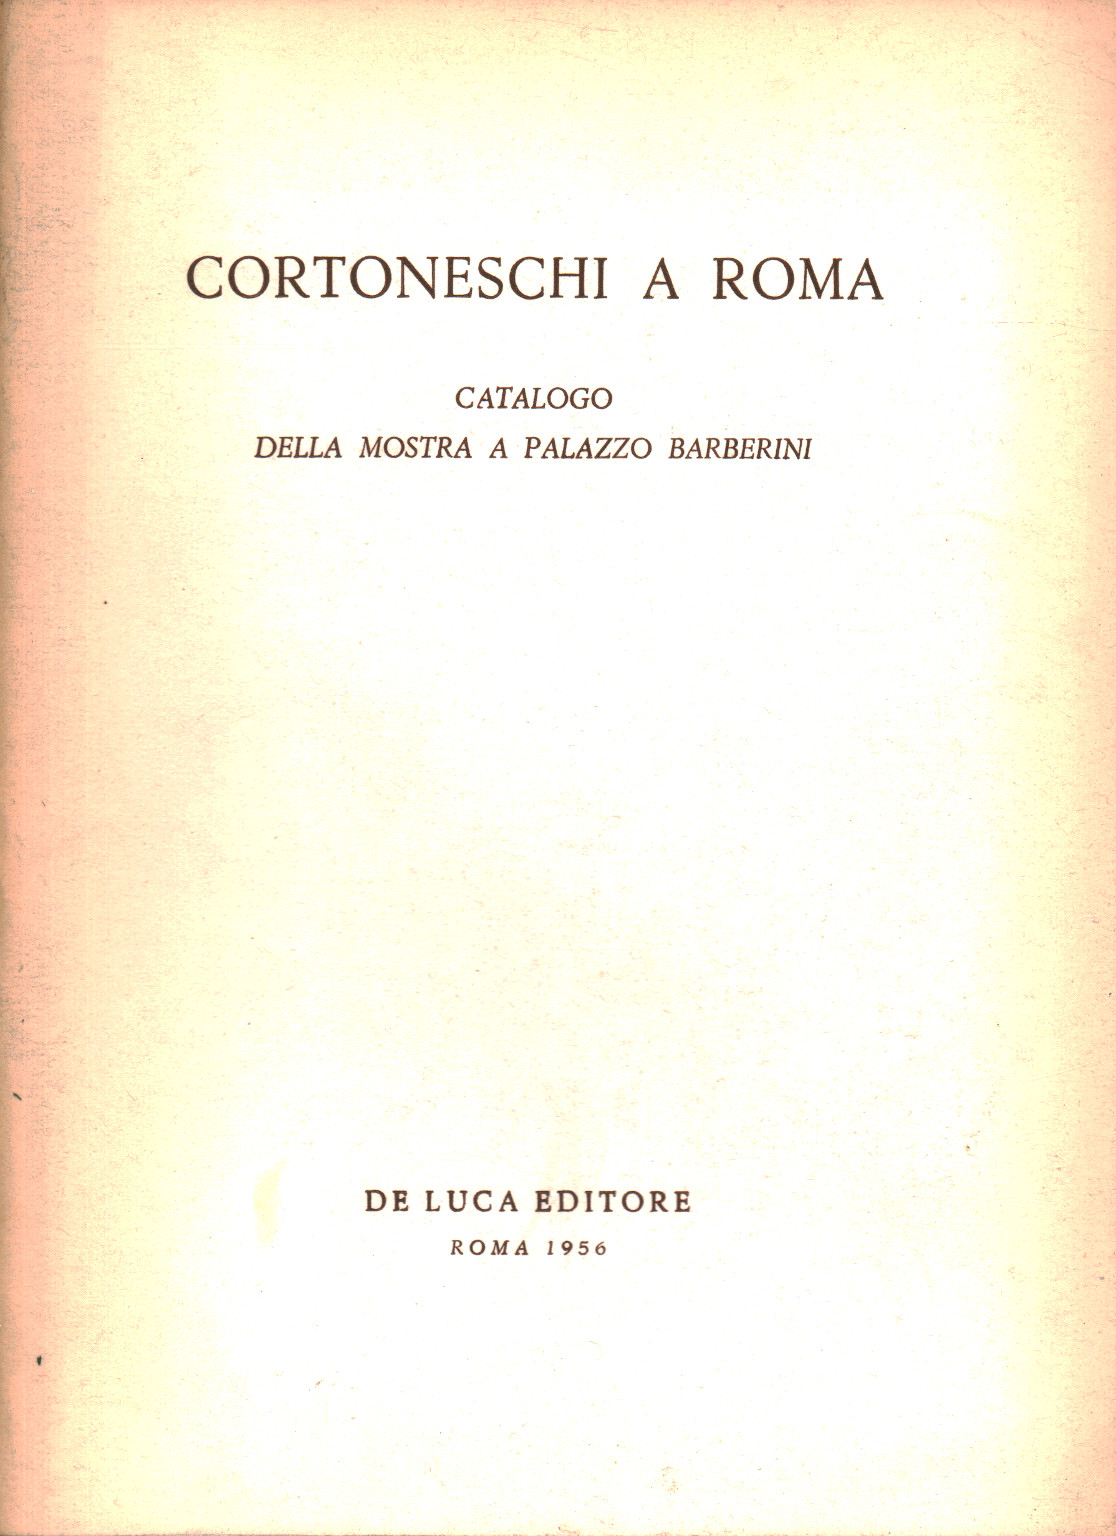 Cortoneschi in Rome, s.a.